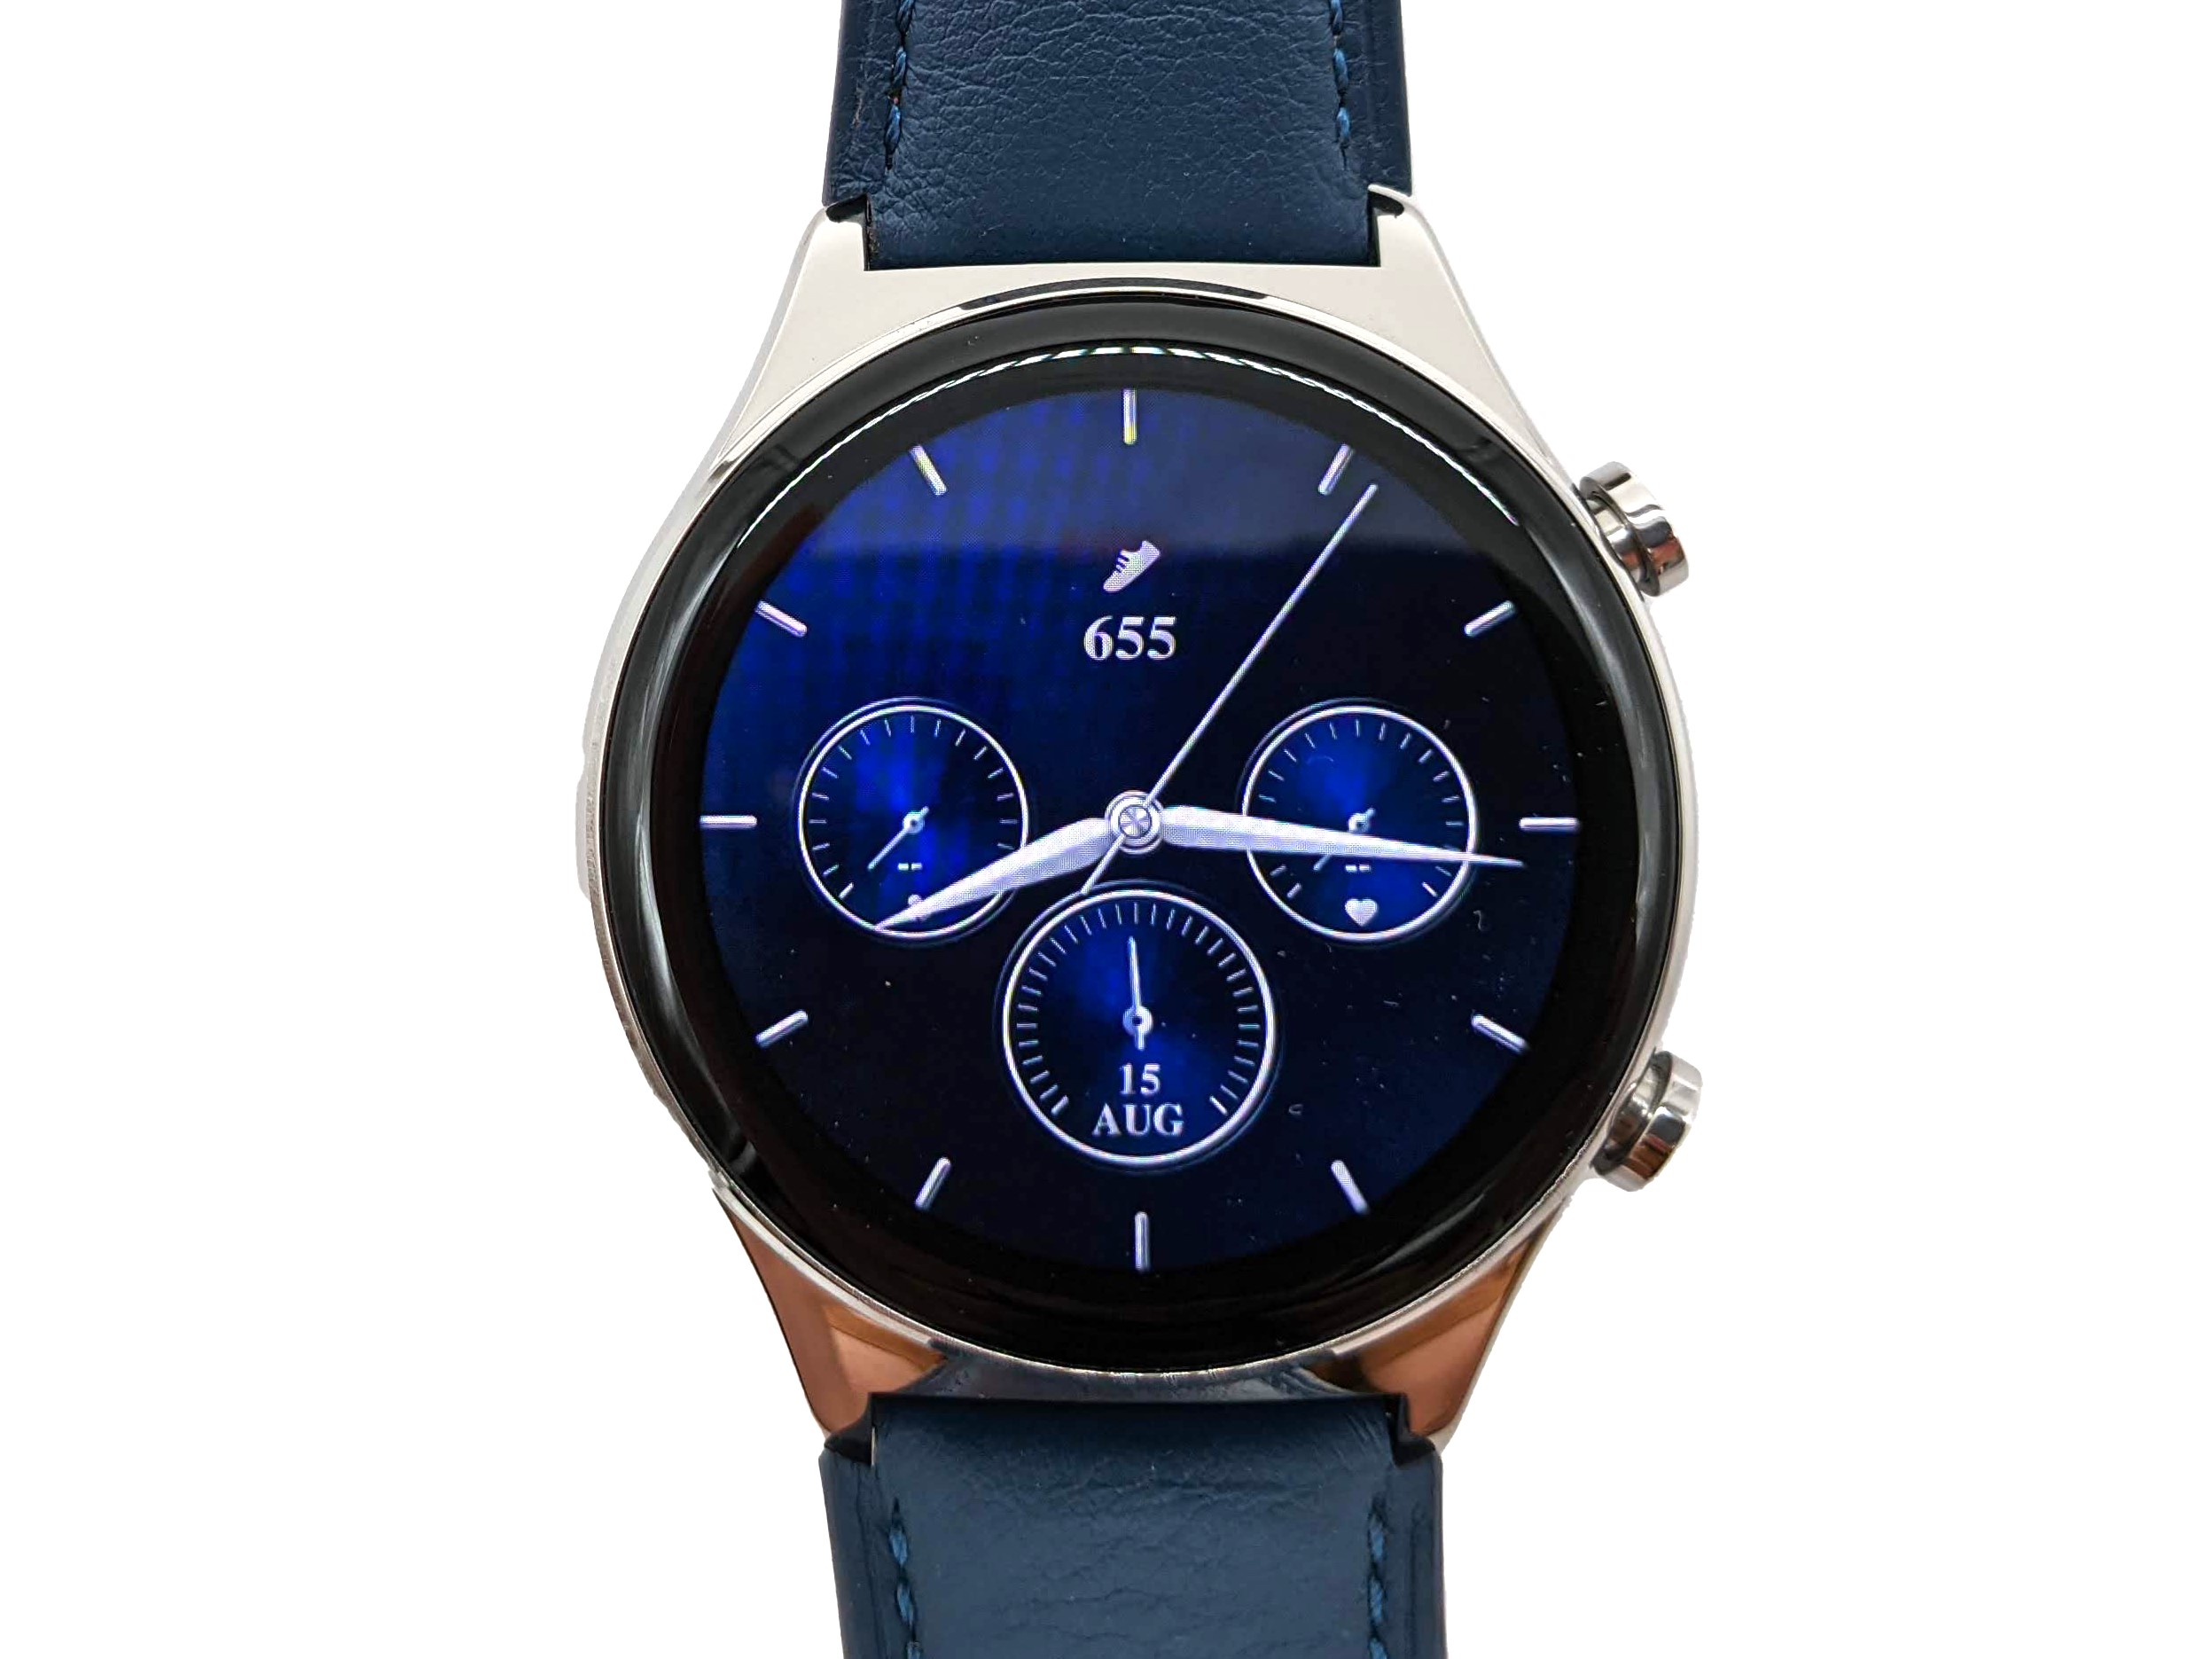 Honor Watch GS 3 Bleu - Montre connectée - Garantie 3 ans LDLC